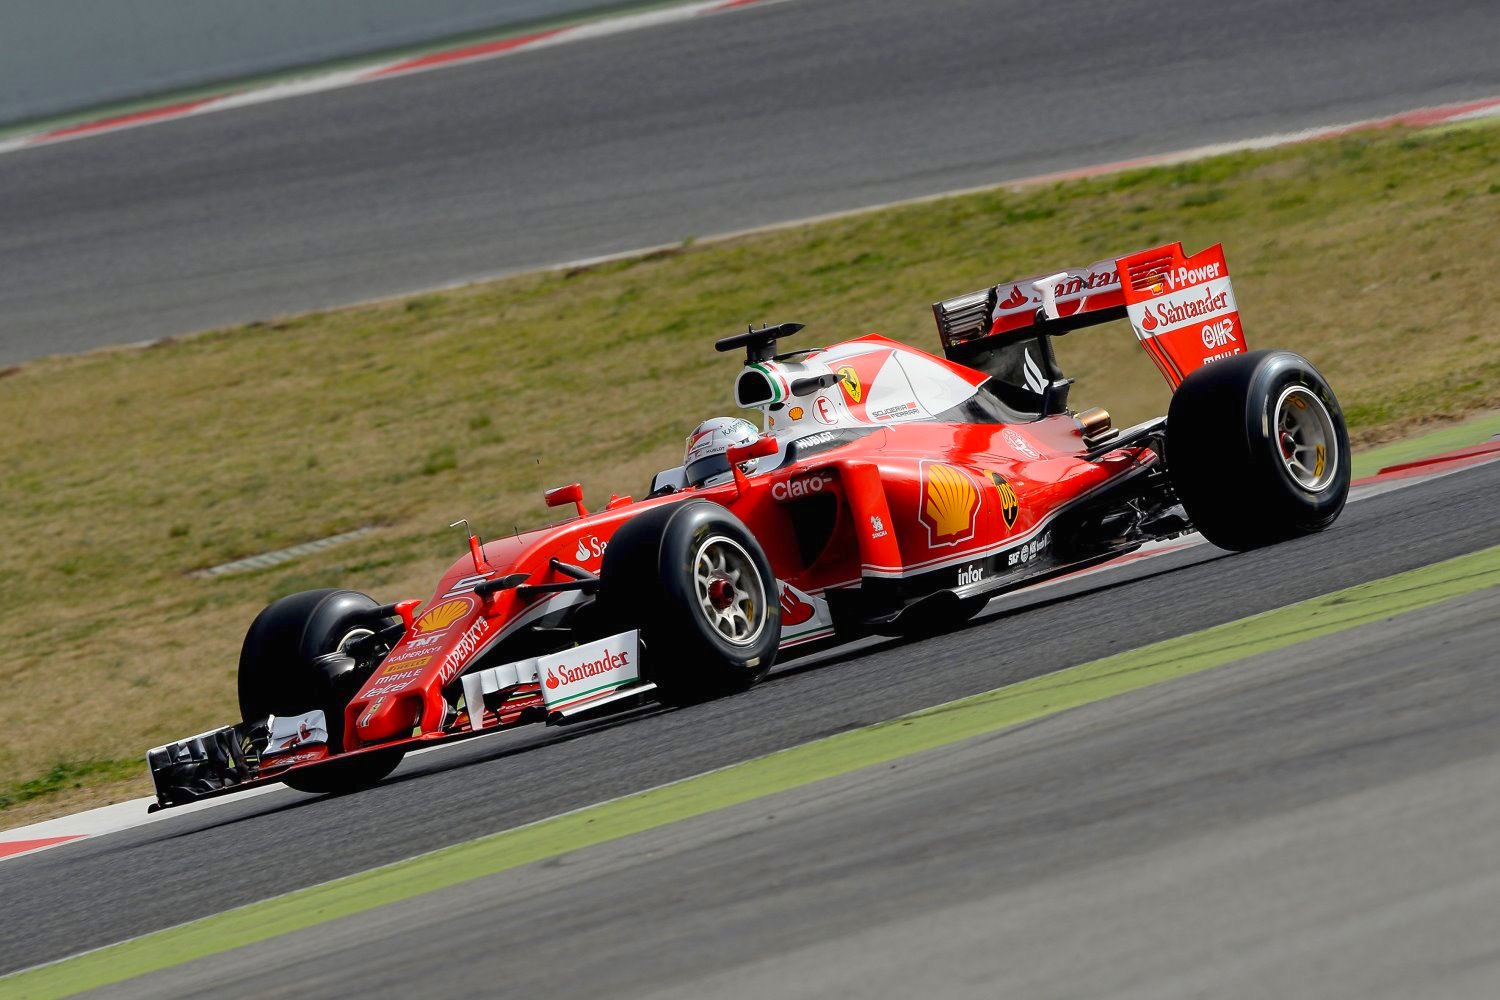 Vettel making headlines now while Mercedes sandbags